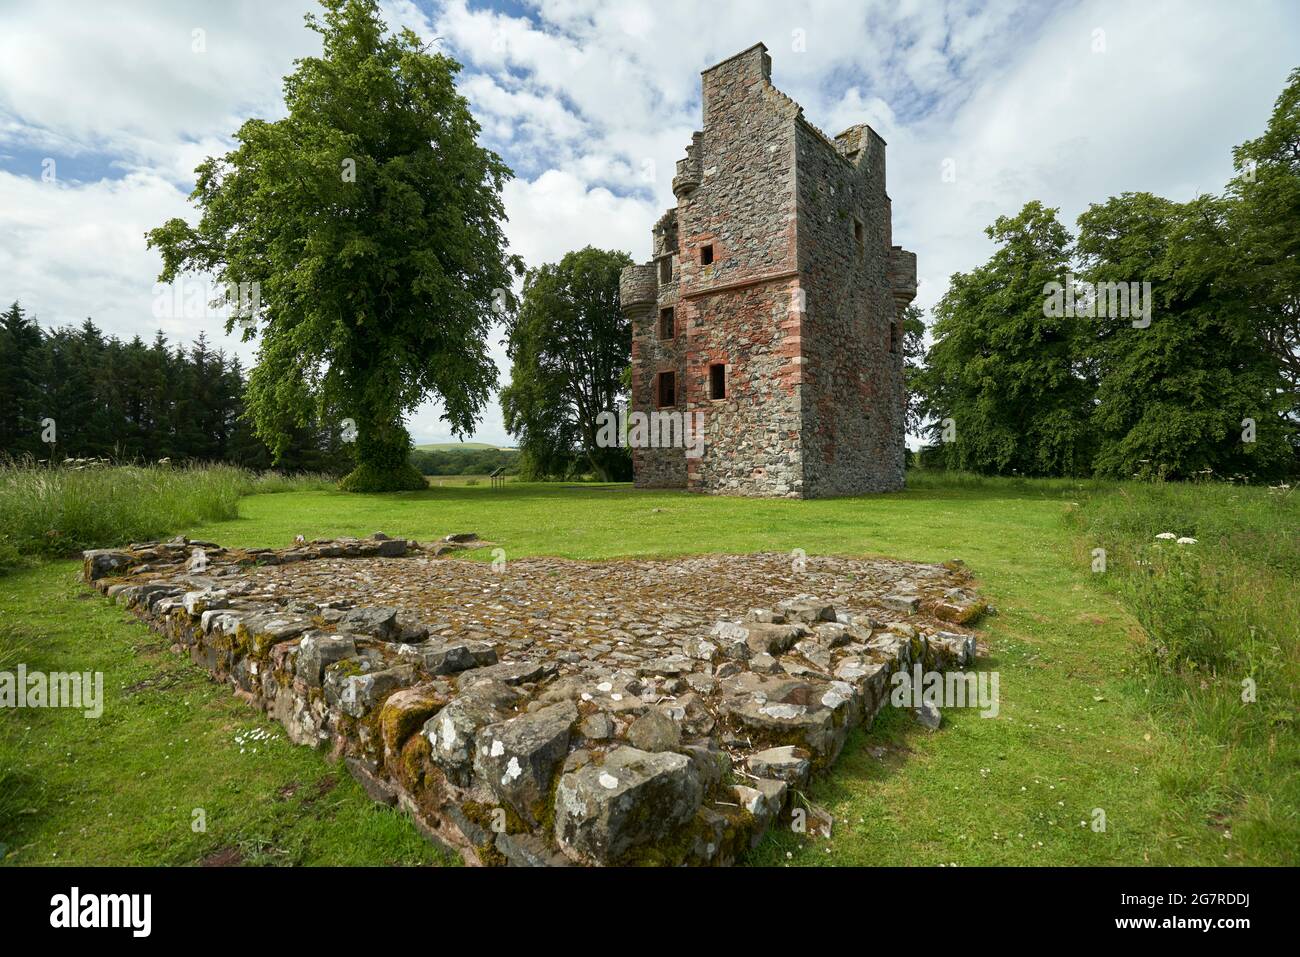 La tour Greenknowe une tour du XVIe siècle près de Gordon dans les frontières écossaises le jour de l'été. Banque D'Images